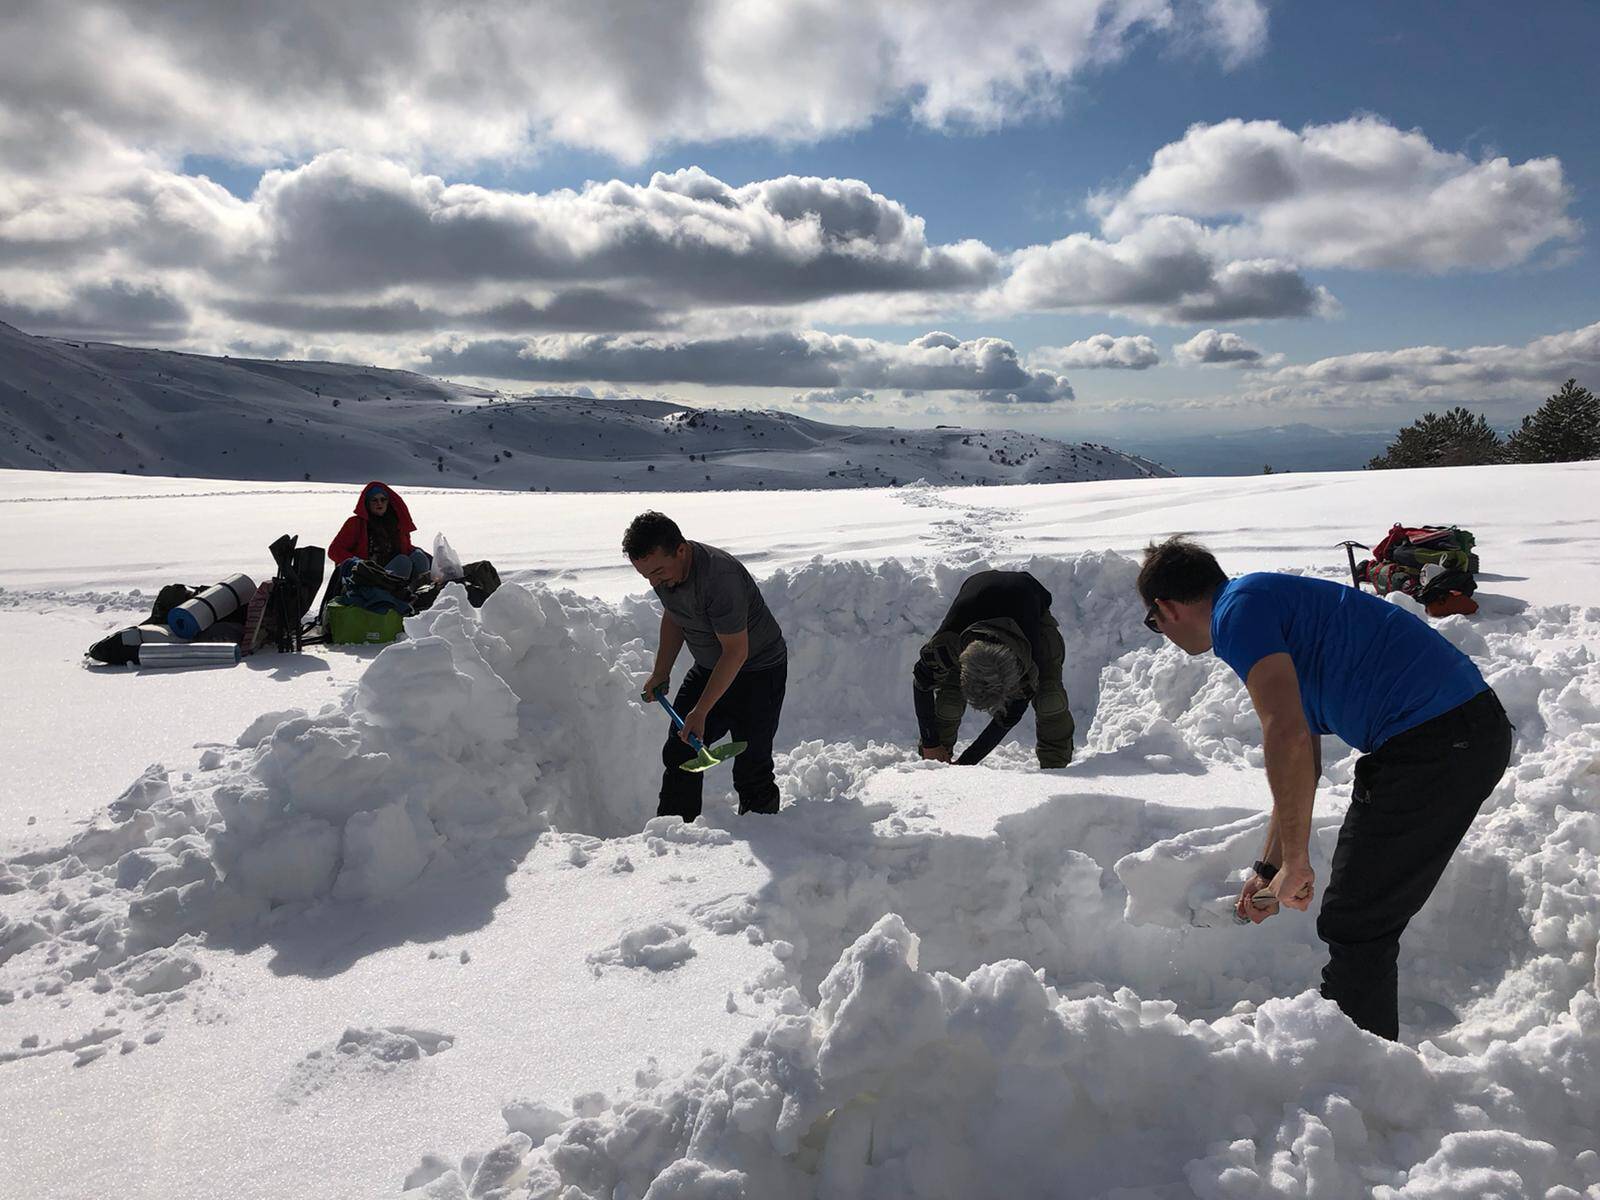 (HİDAK), Çatak Eski Kayak Merkezi Mevkiinde Kış Kampı gerçekleştirdi